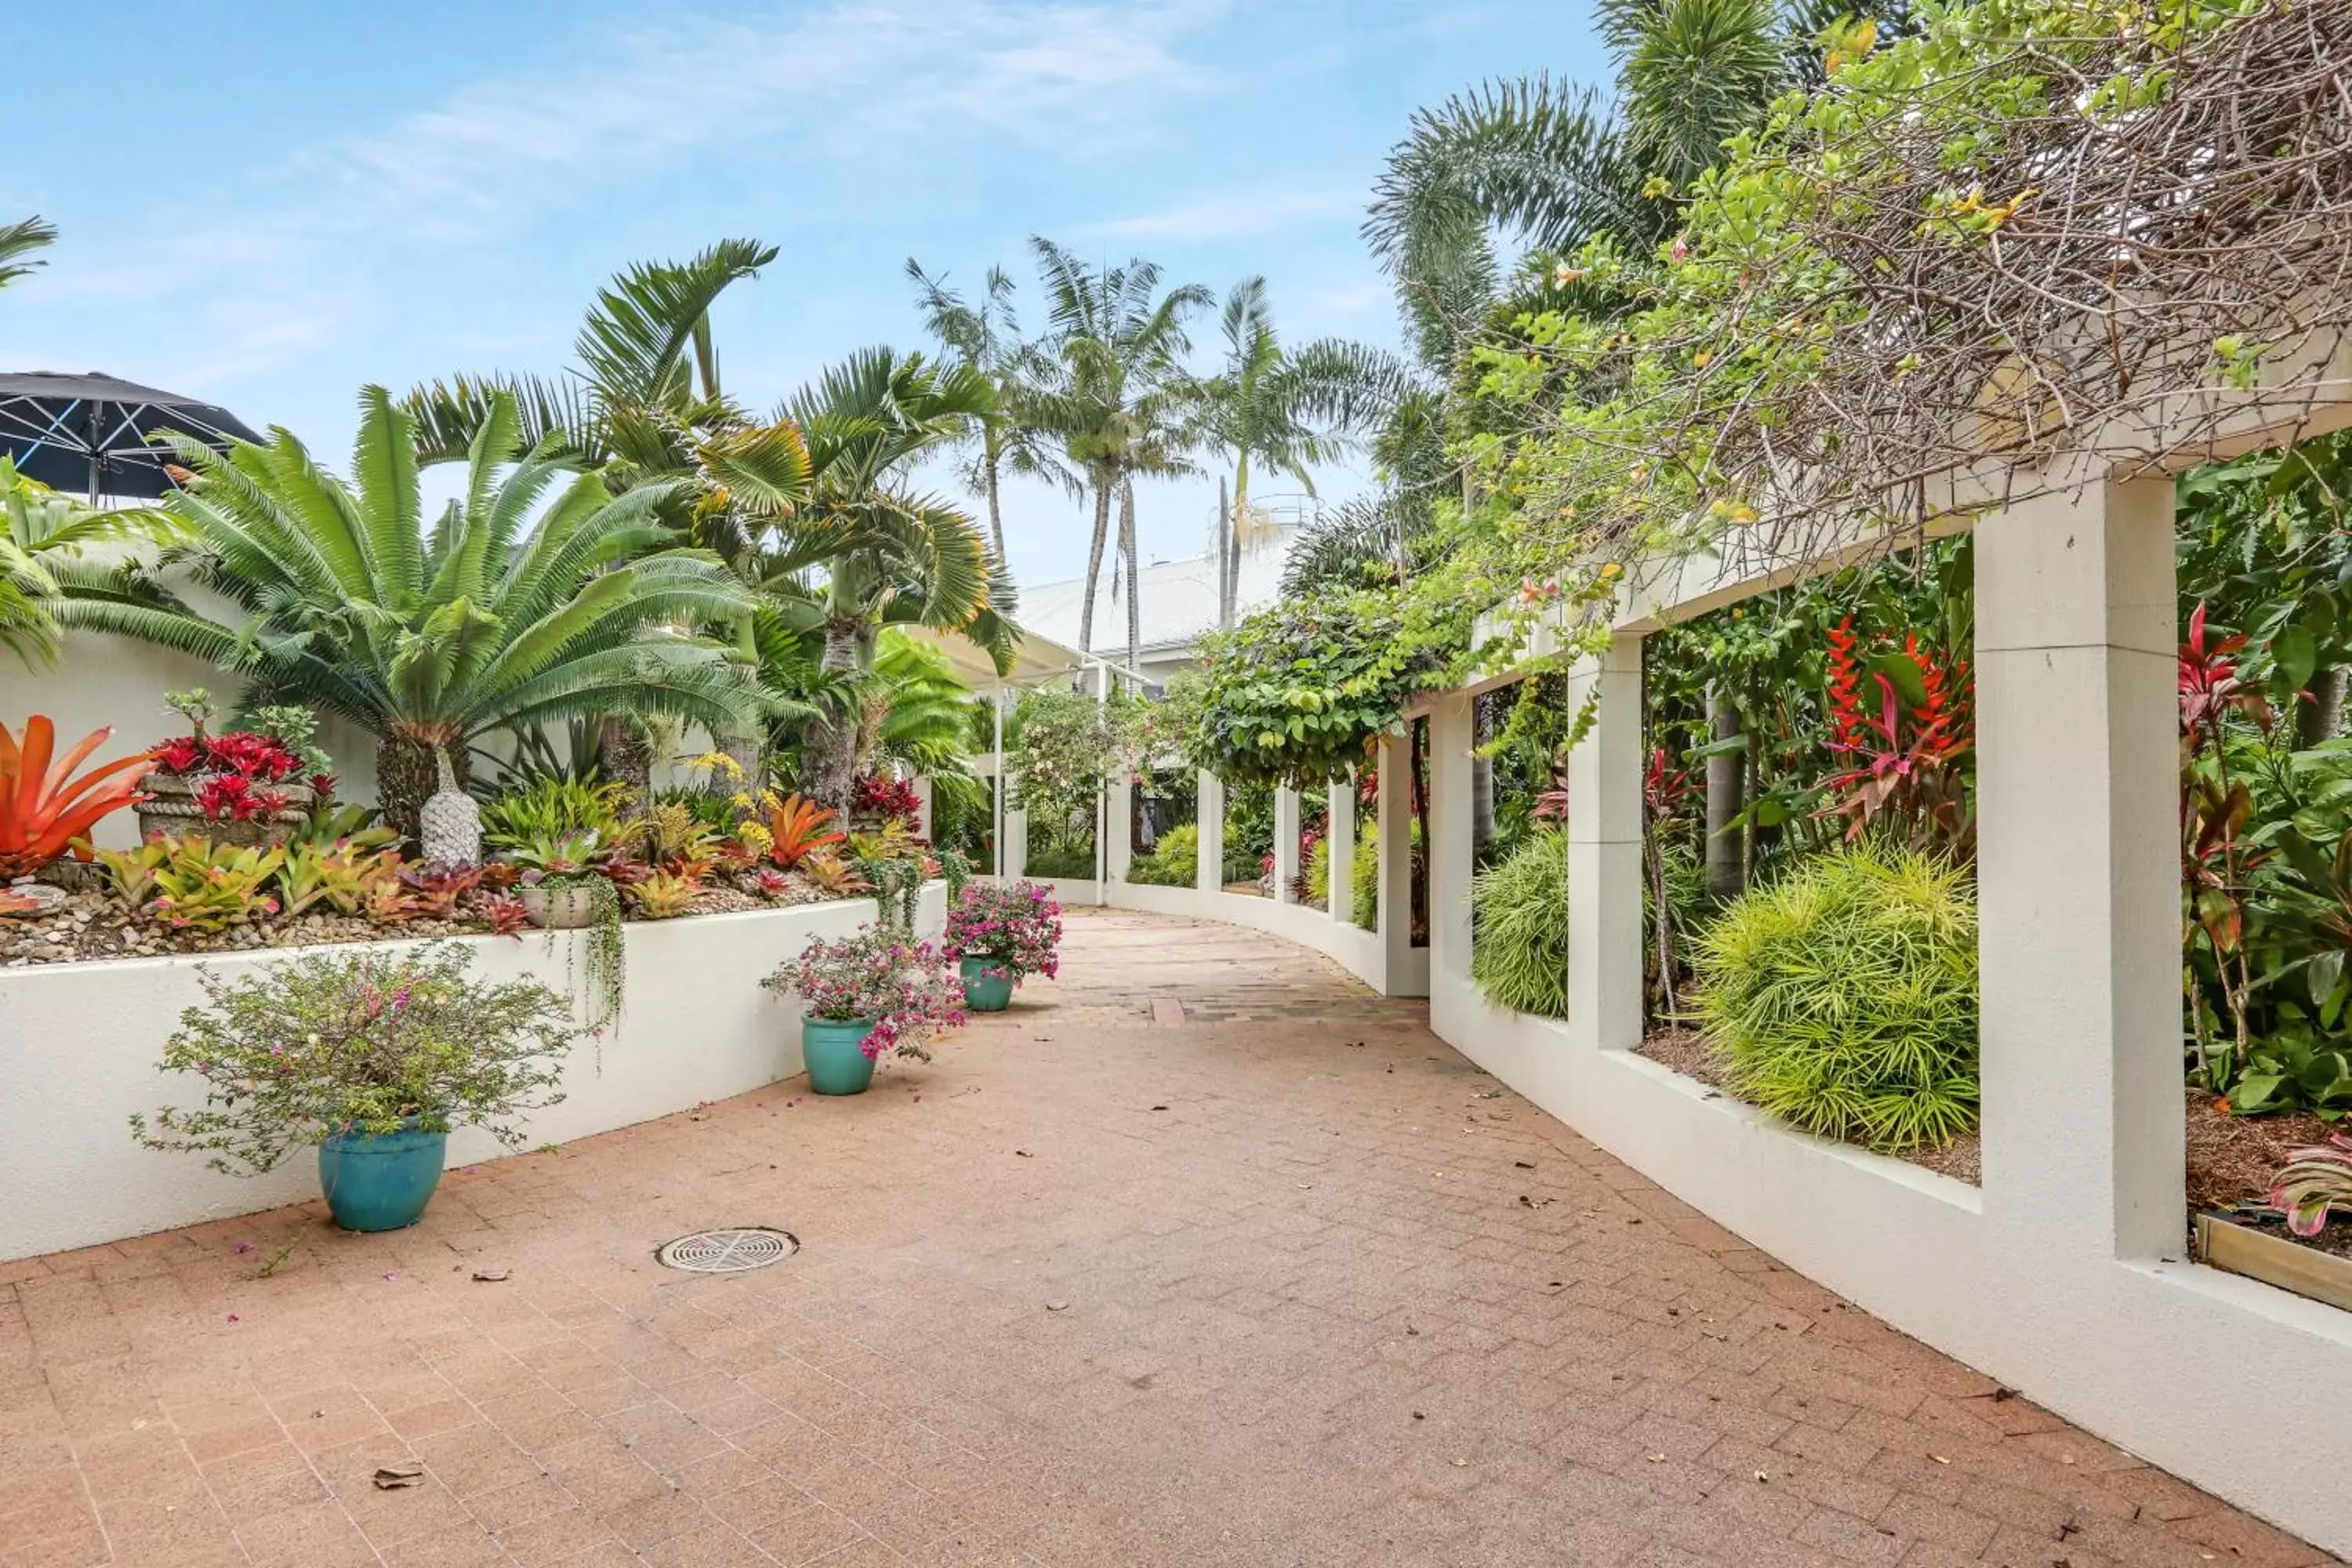 Garden in Shangri-La The Marina, Cairns